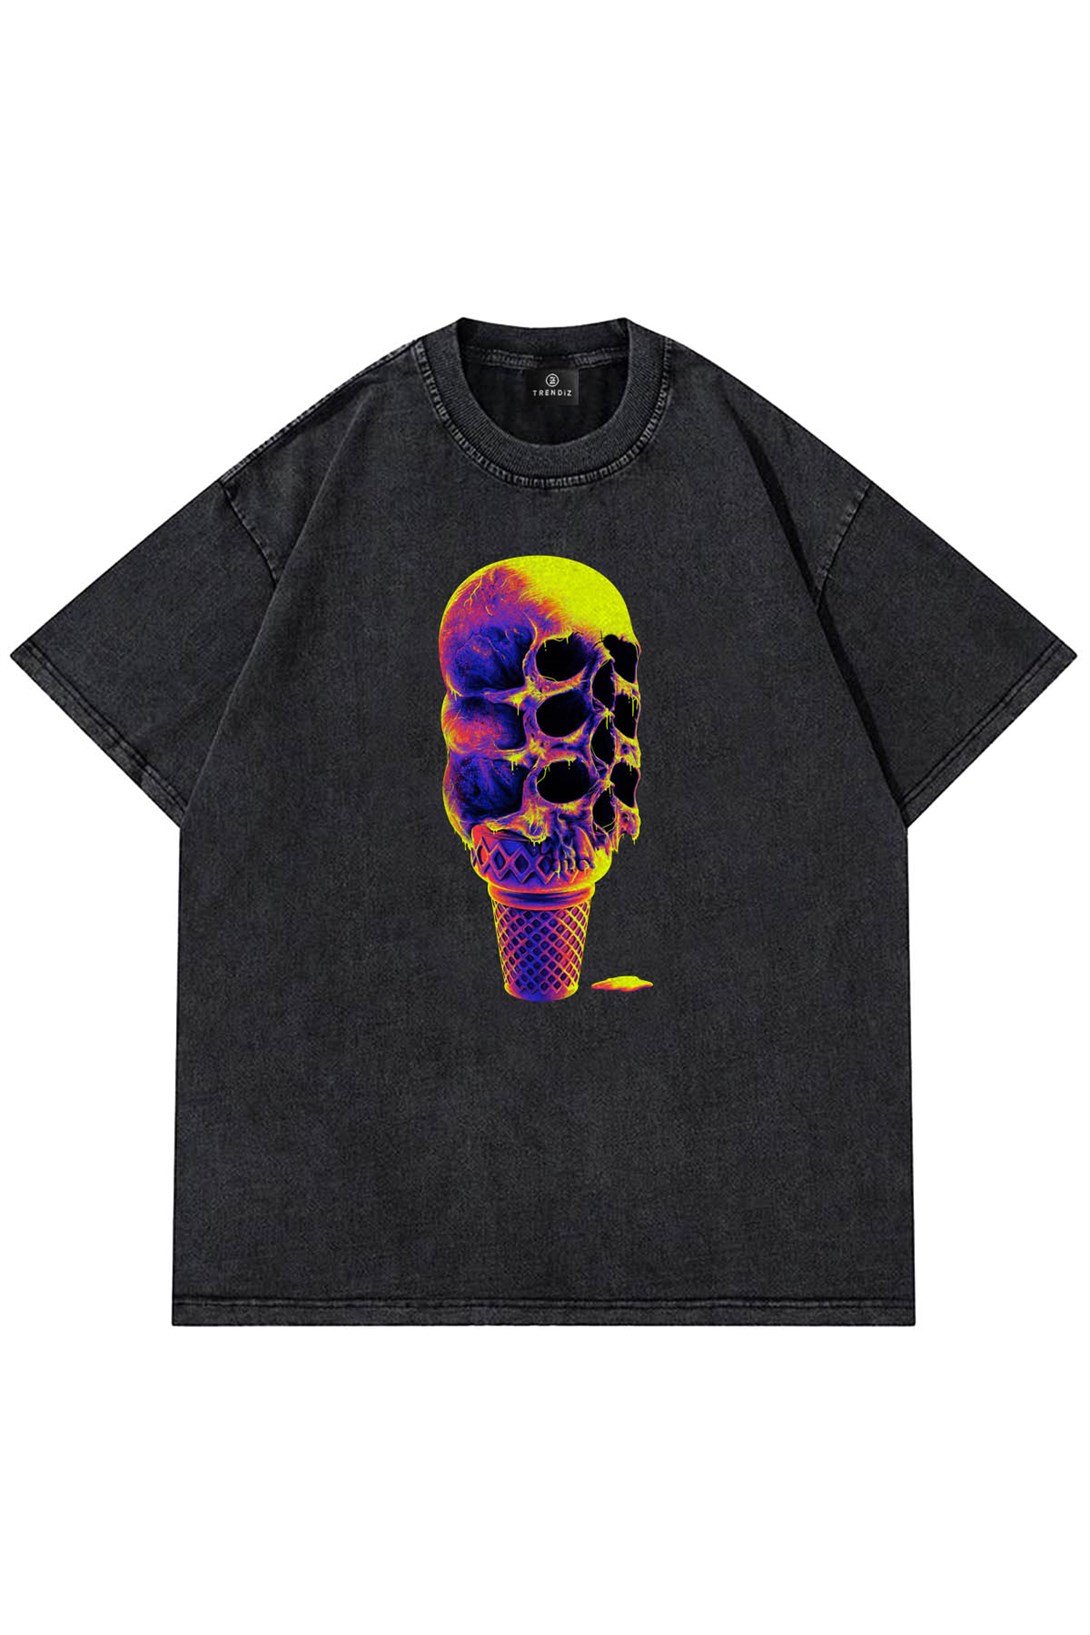 Trendiz Unisex Yıkamalı Dondurma Skull Antrasit Tshirt